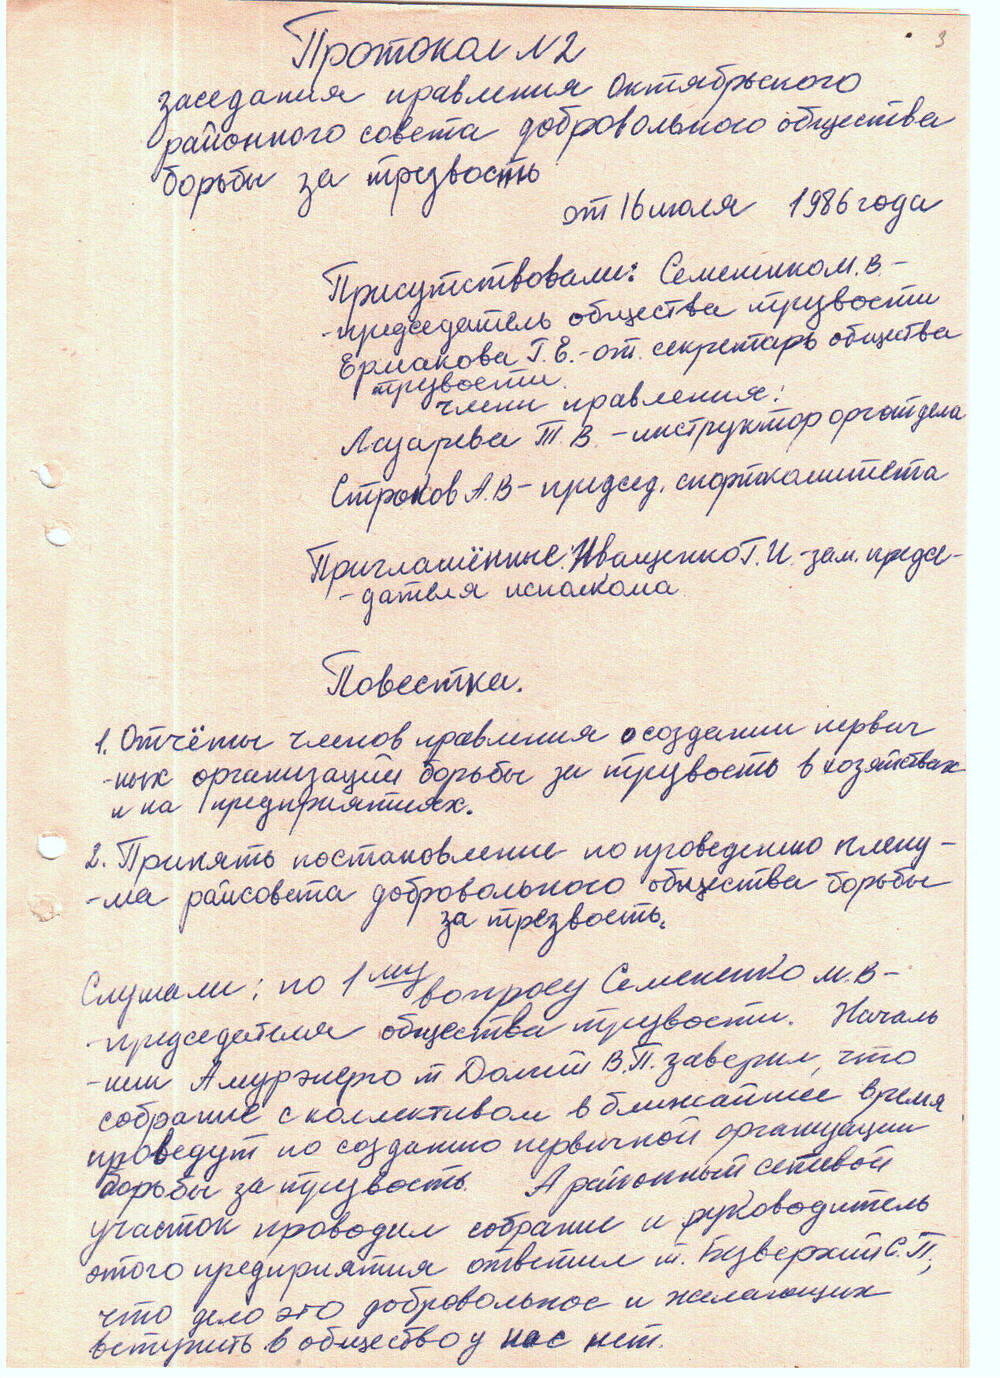 Протокол № 2 заседания правления Совета добровольного общества борьбы за трезвость от 16 июля 1986 г.